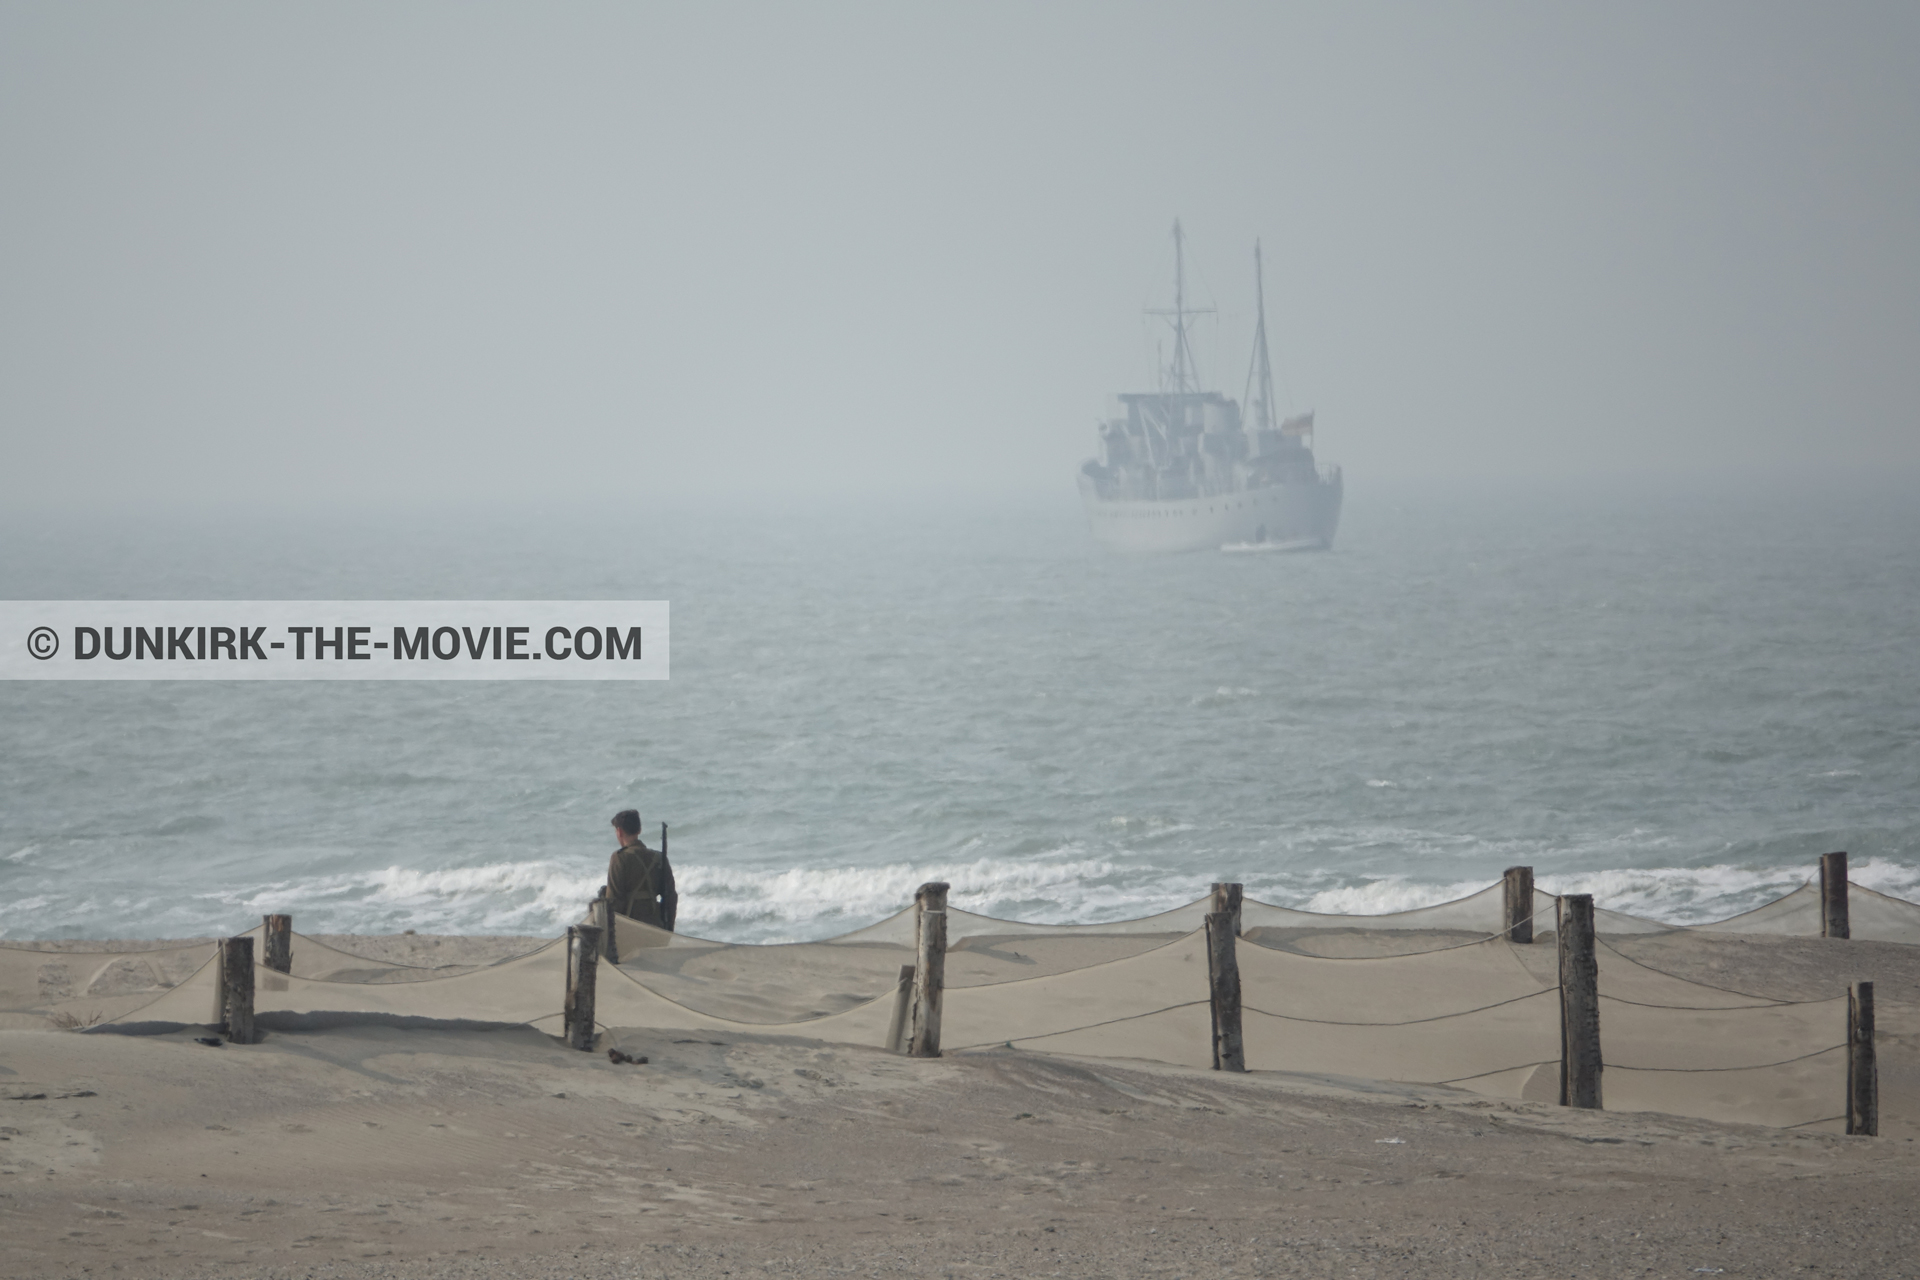 Fotos con barco, cielo gris, extras, mares agitados, playa,  durante el rodaje de la película Dunkerque de Nolan